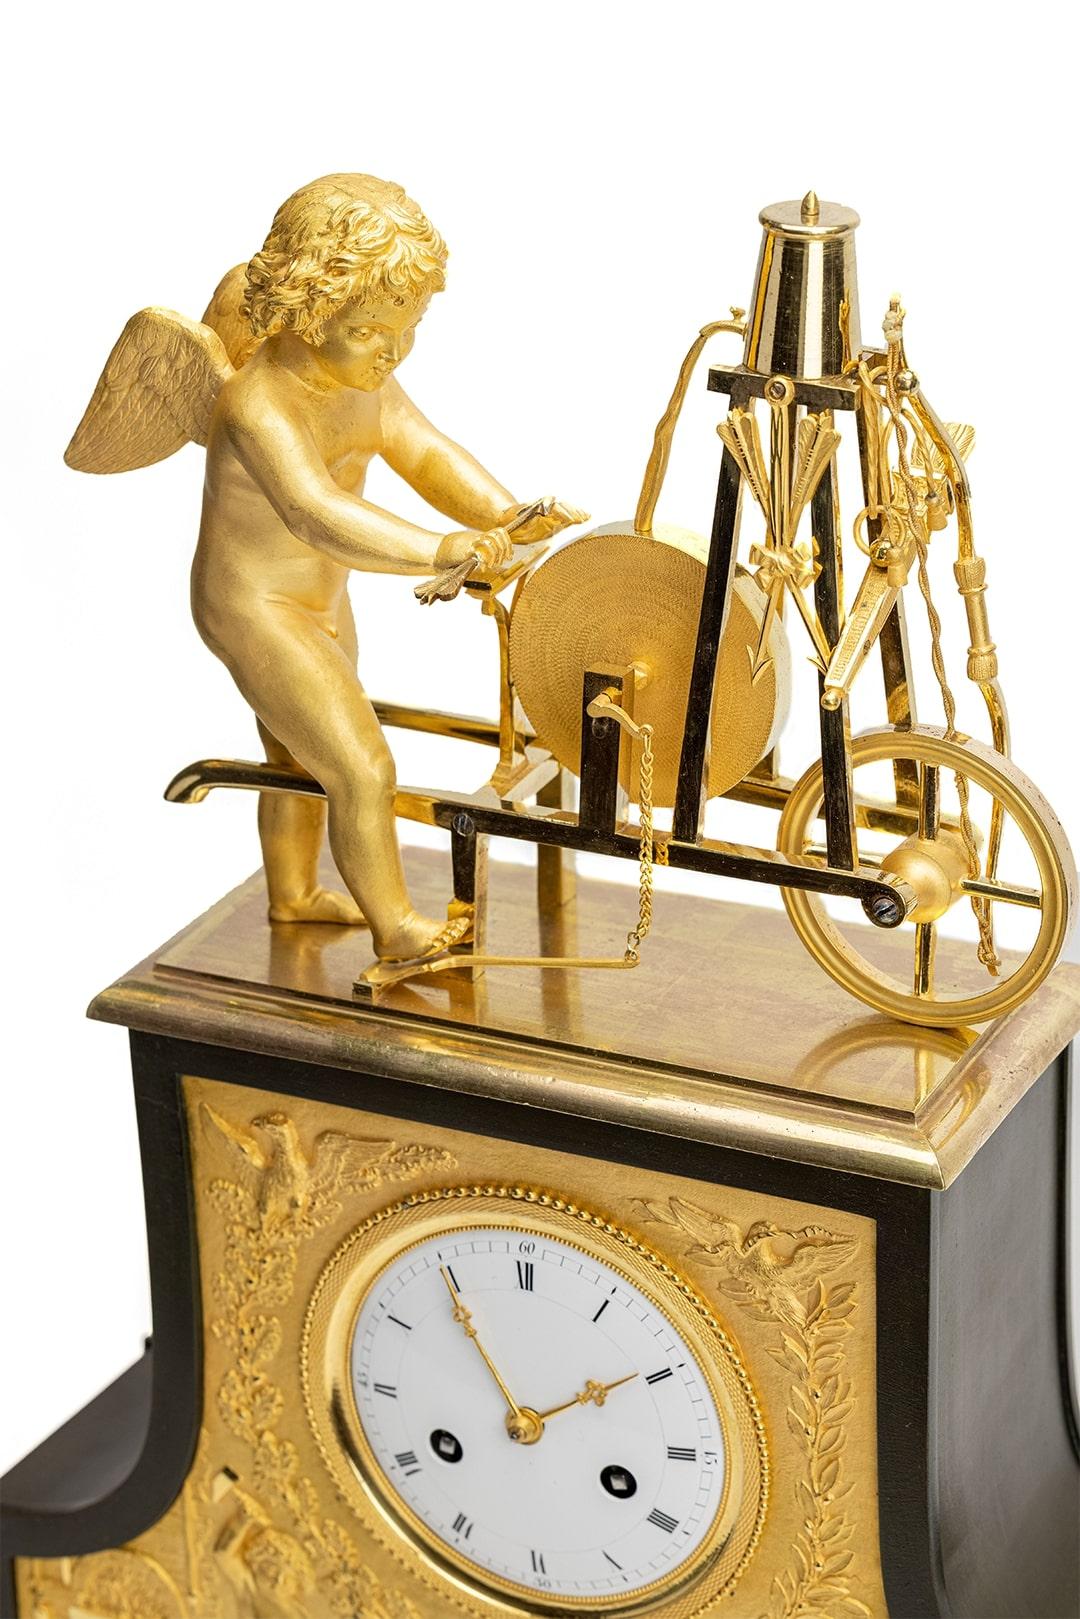 Eine Bronze Quecksilber Feuer vergoldet Reich romantischen Kaminsims Uhr. Wird der berühmten Werkstatt von Thomire in Paris zugeschrieben. Du siehst einen Engel, der als Schmied arbeitet und seine Pfeile der Liebe schärft. Die Kombination aus den